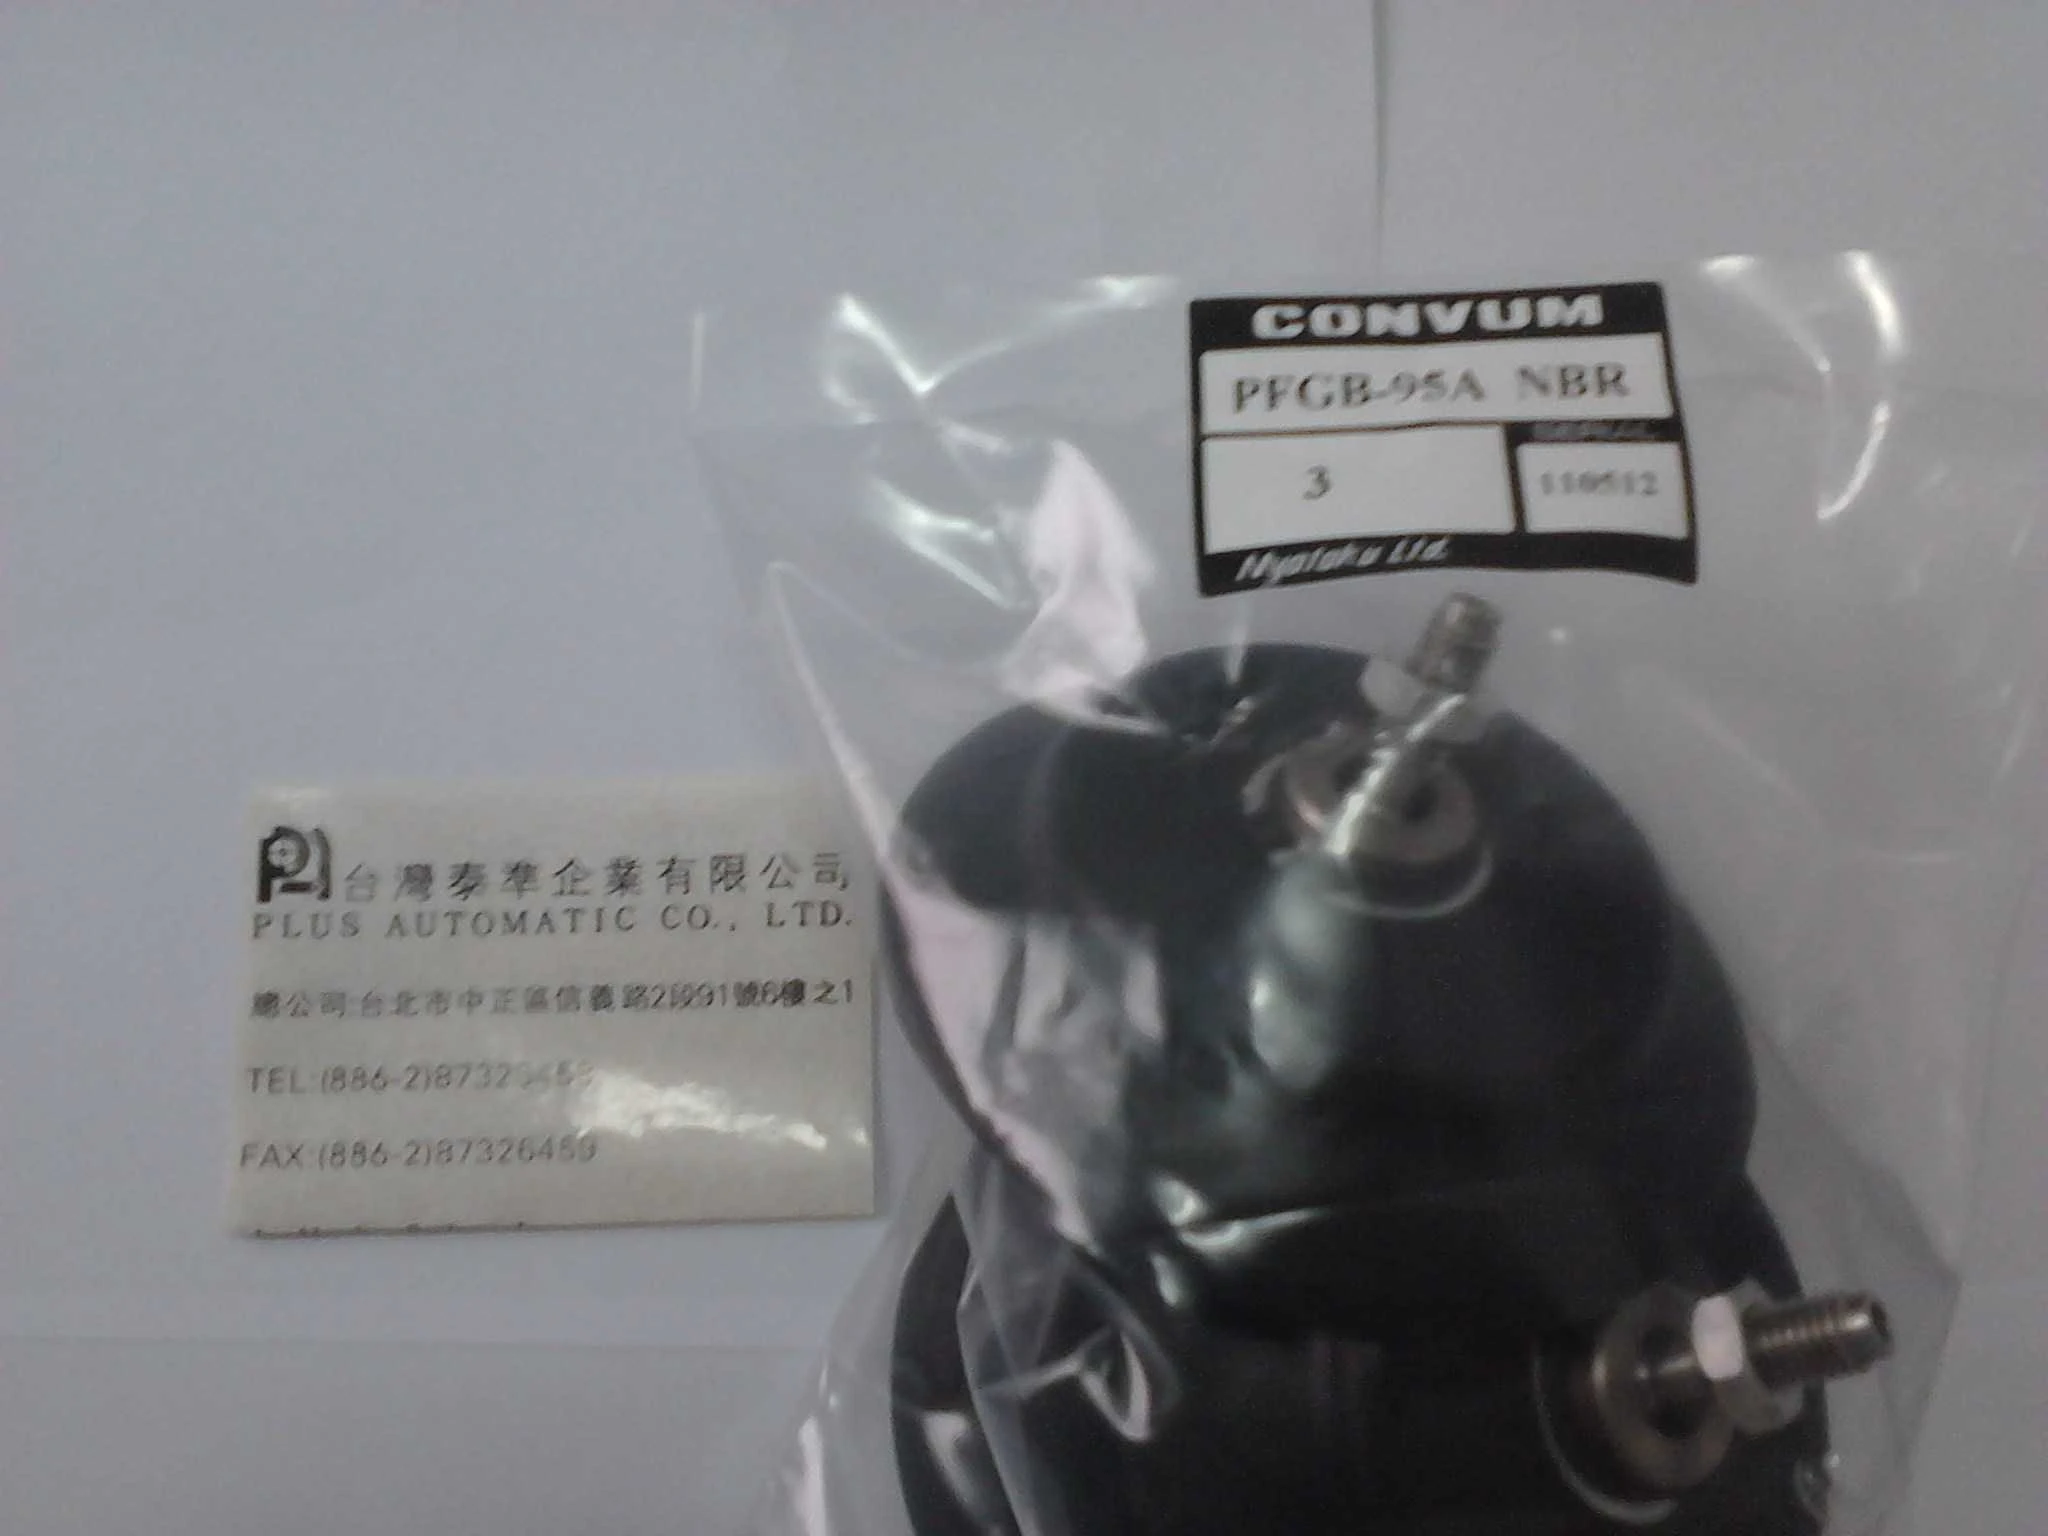 日本CONVUM 真空吸盤PFGB-95A